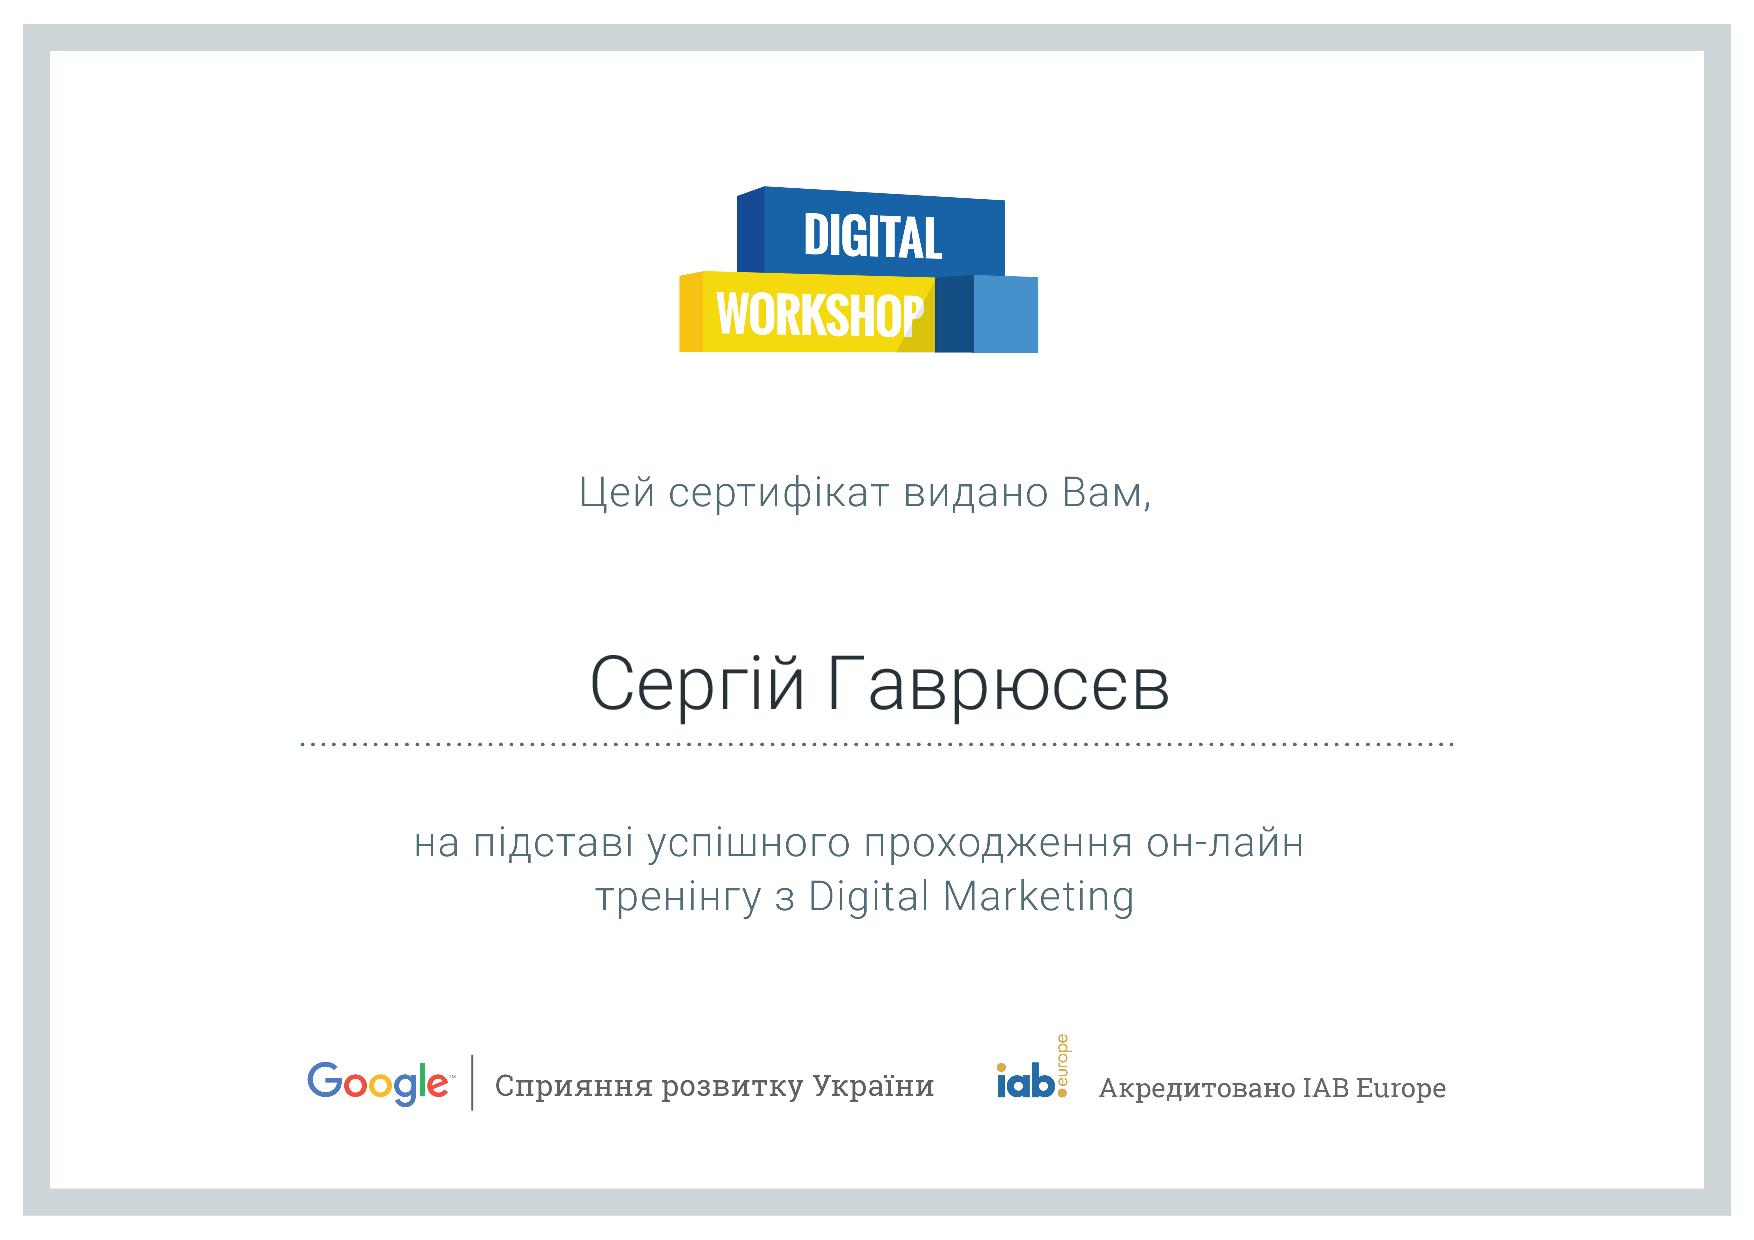 Сертификат о прохождении он-лайн тренинга по Digital Marketing от Google